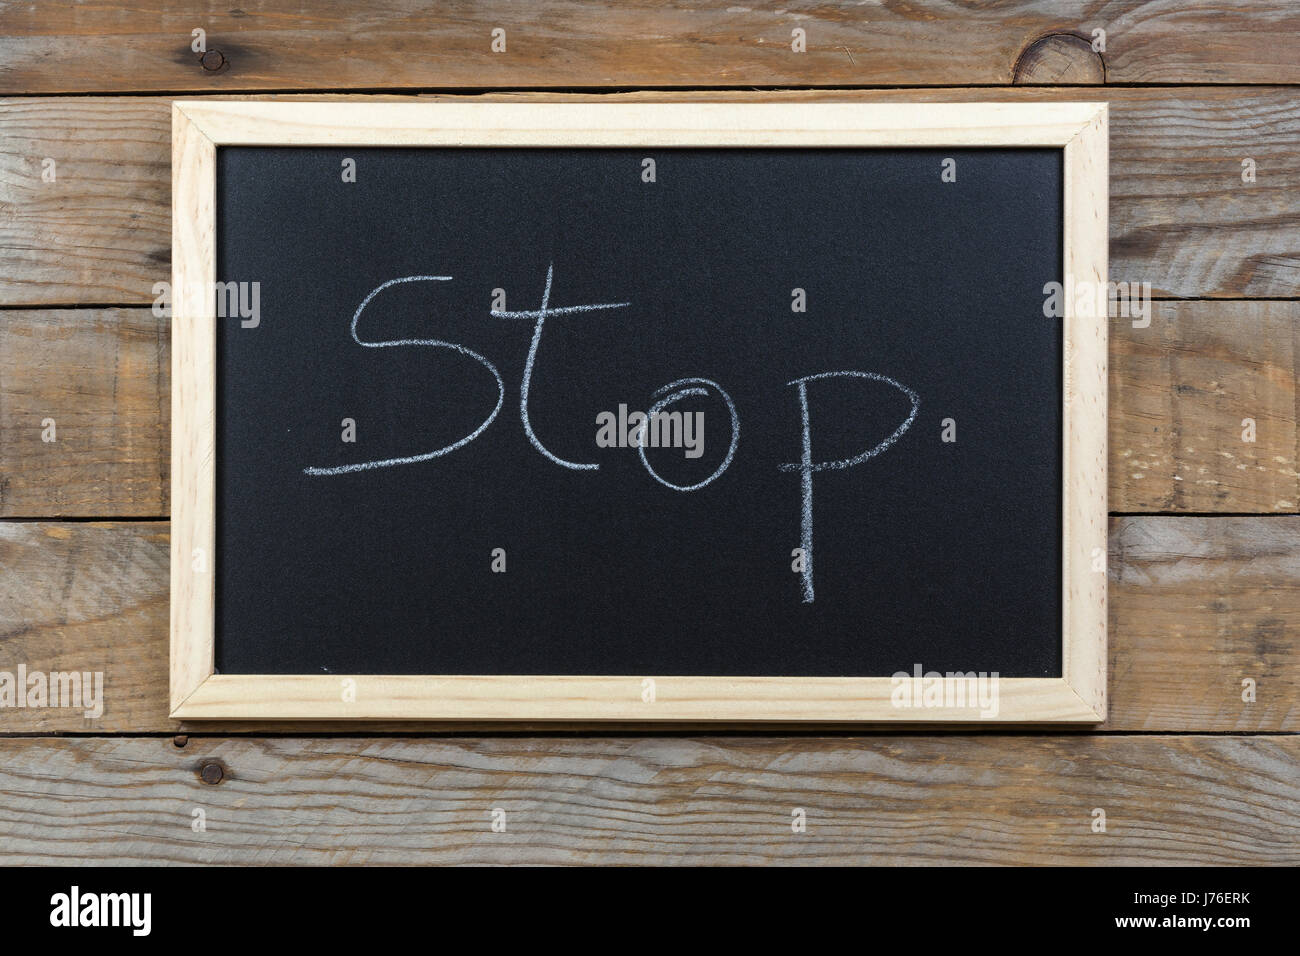 Raum Tafel Hintergrundtextur mit Holzrahmen mit dem Wort "Stop". Tafel Platz für Hintergrundbilder. Horizontale Bauform Landschaft. Stockfoto